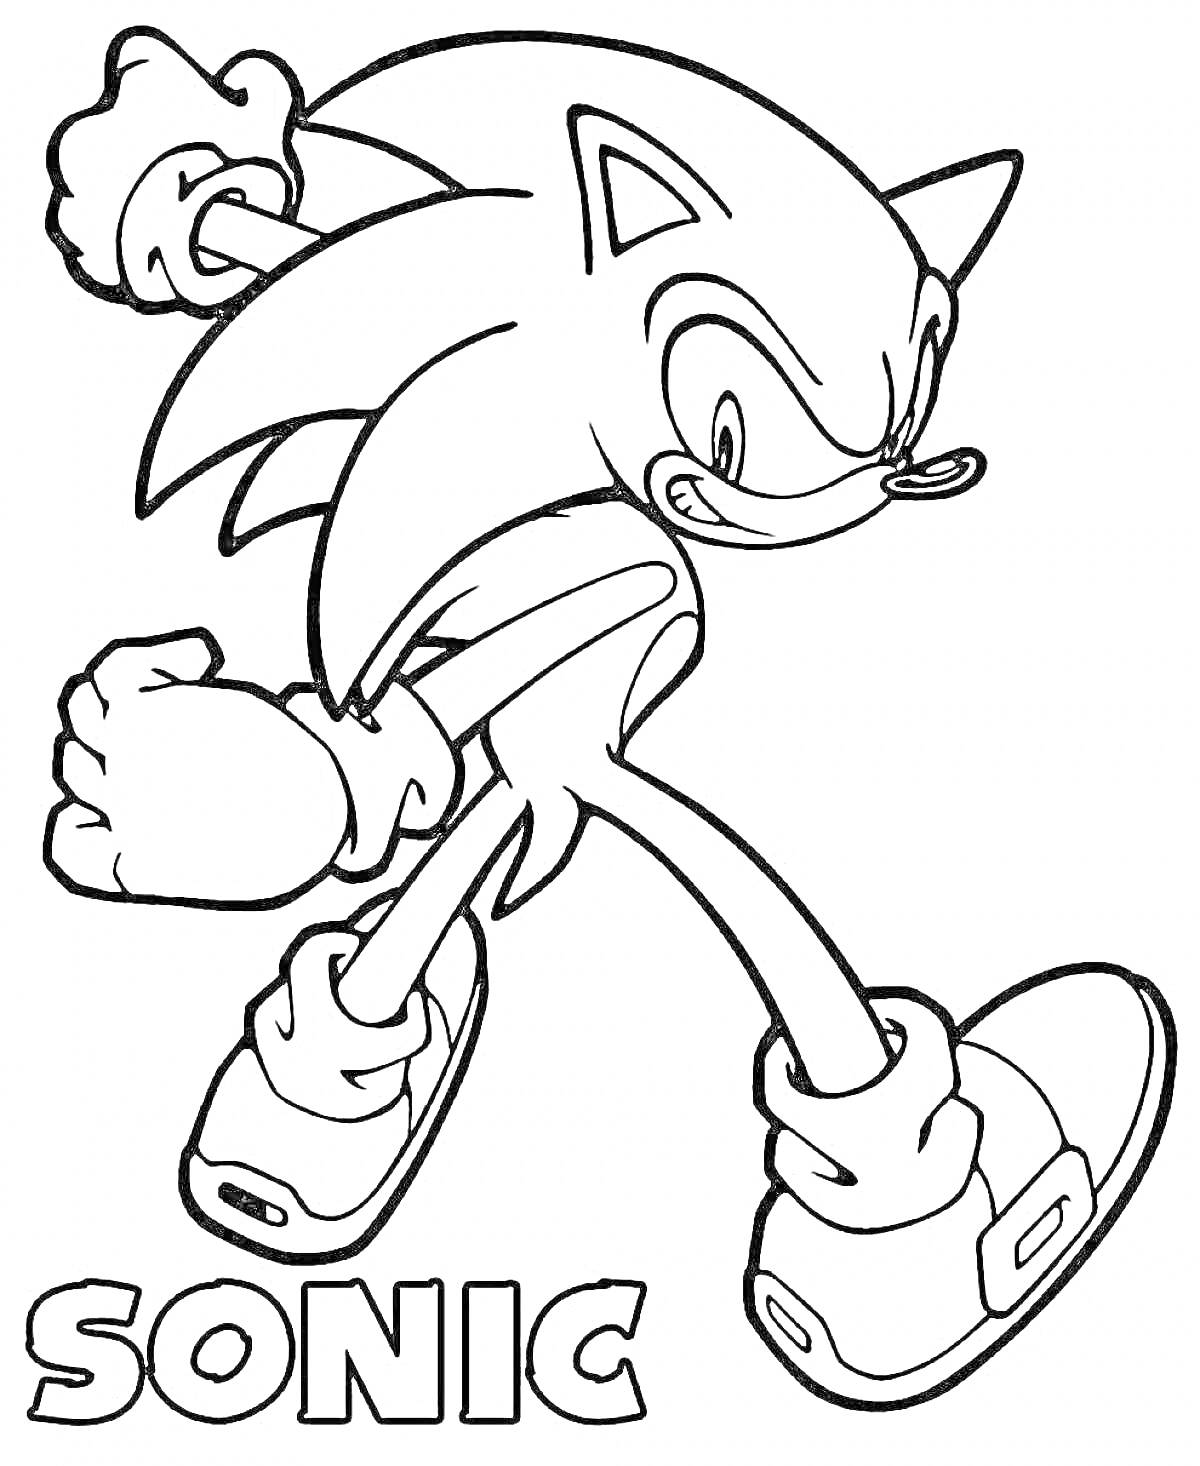 Sonic, ёж, стоит с поднятыми руками и сжатым кулаком, в кроссовках с пряжками, надпись 